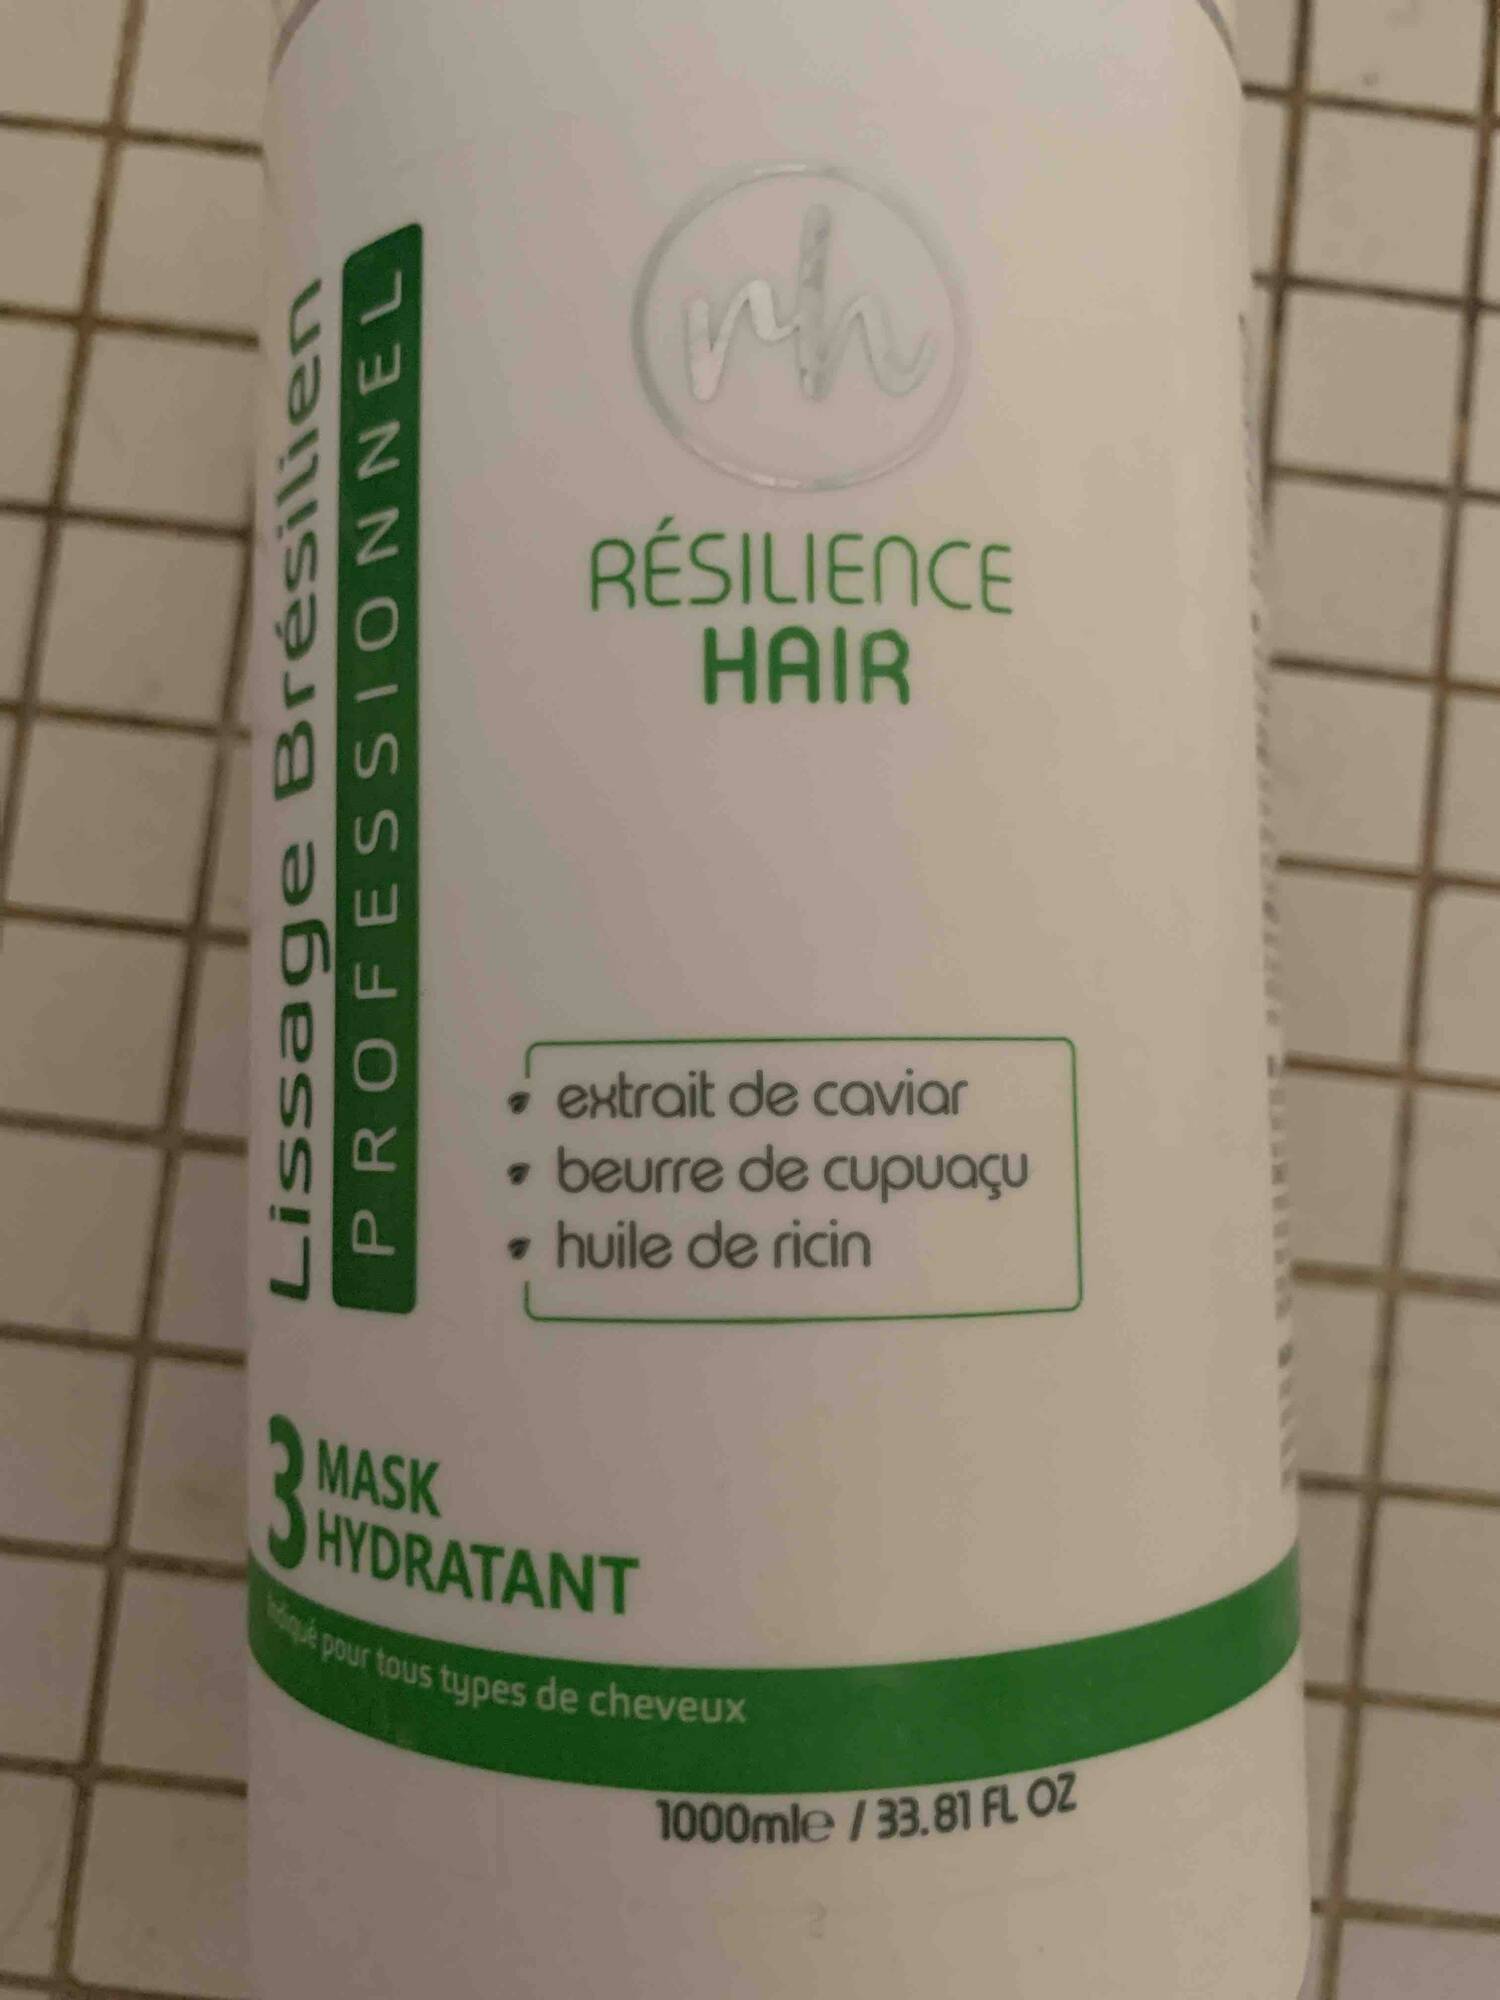 RÉSILIENCE HAIR - Lissage Brésilien - 3 Mask hydratant